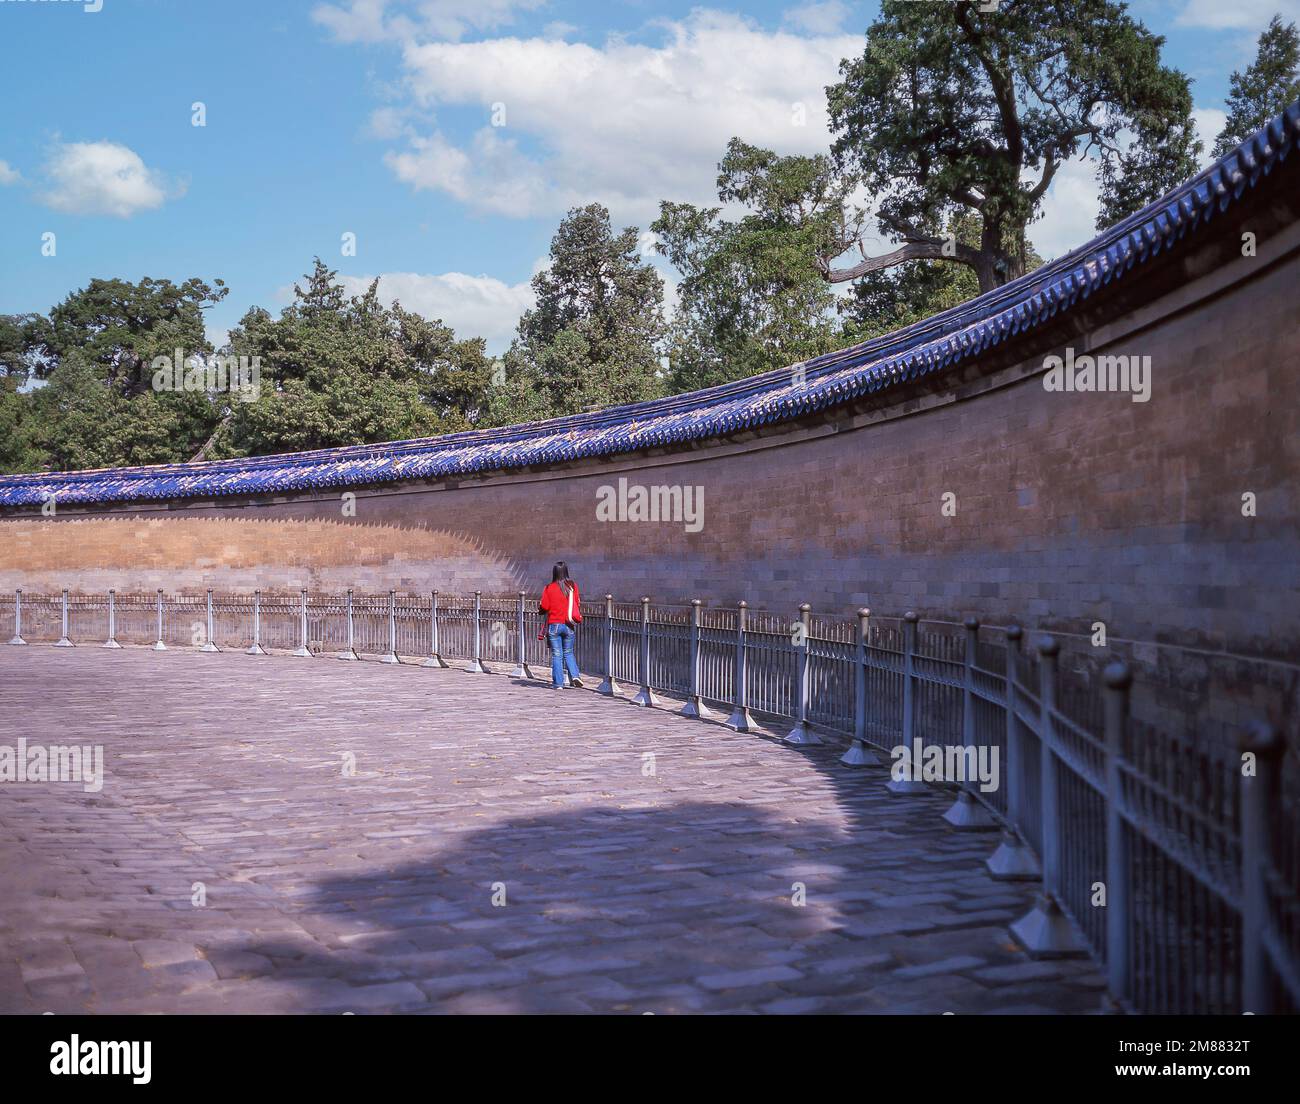 Il Muro dell'eco nella volta imperiale del cielo, il Tempio del cielo, Dongcheng, Pechino, Pechino e Nord-est, La Repubblica popolare cinese Foto Stock